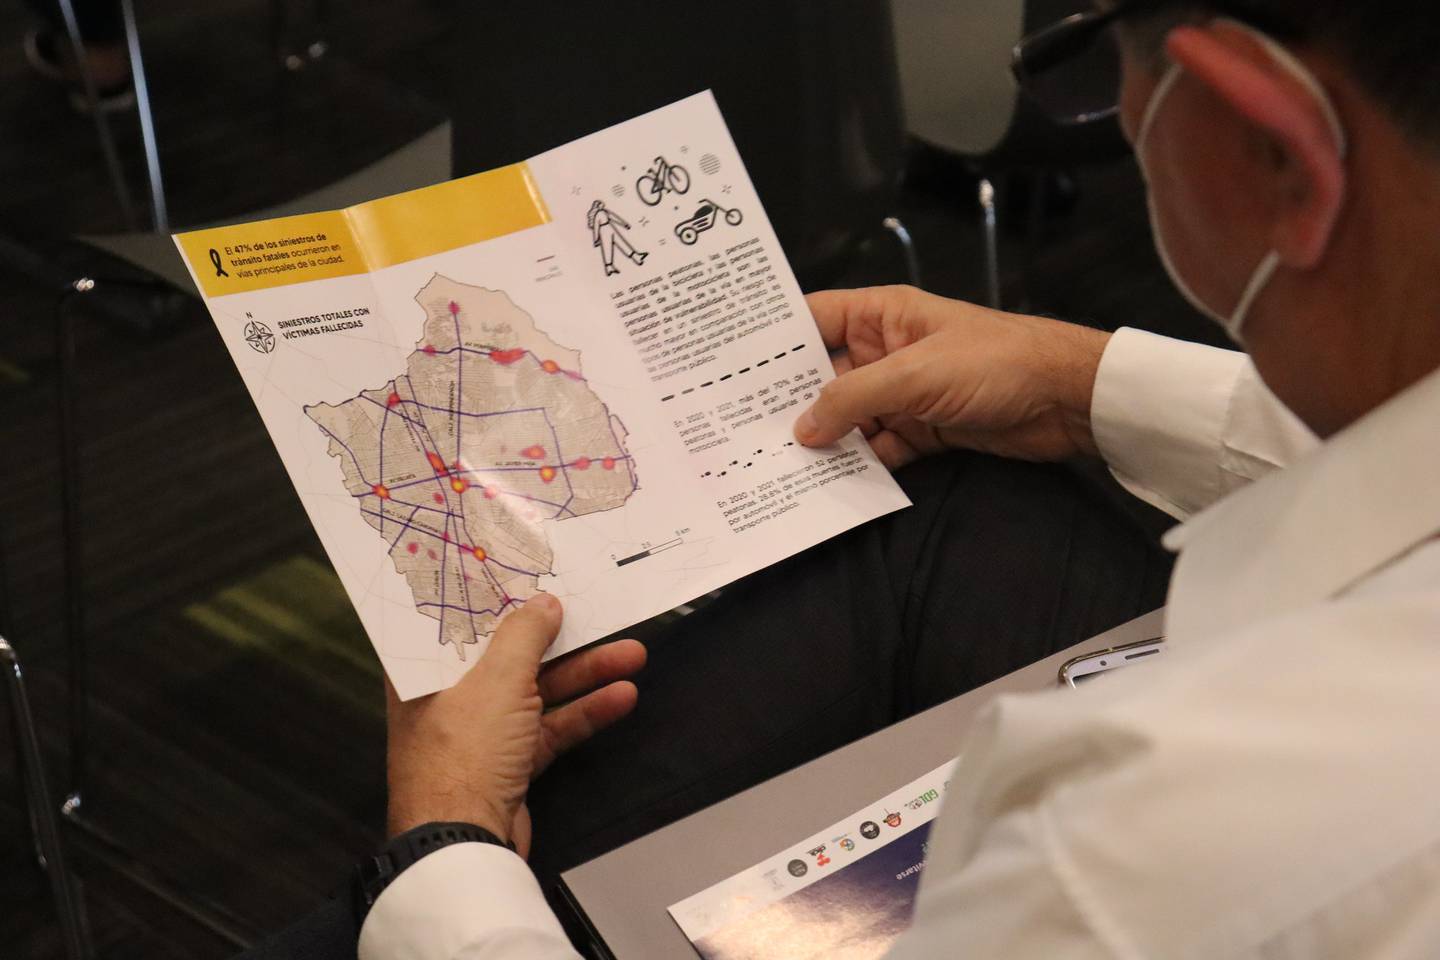 El reporte presentado por el ayuntamiento de Guadalajara no sólo incluye datos de las autoridades viales, sino de otras fuentes como ONG’s